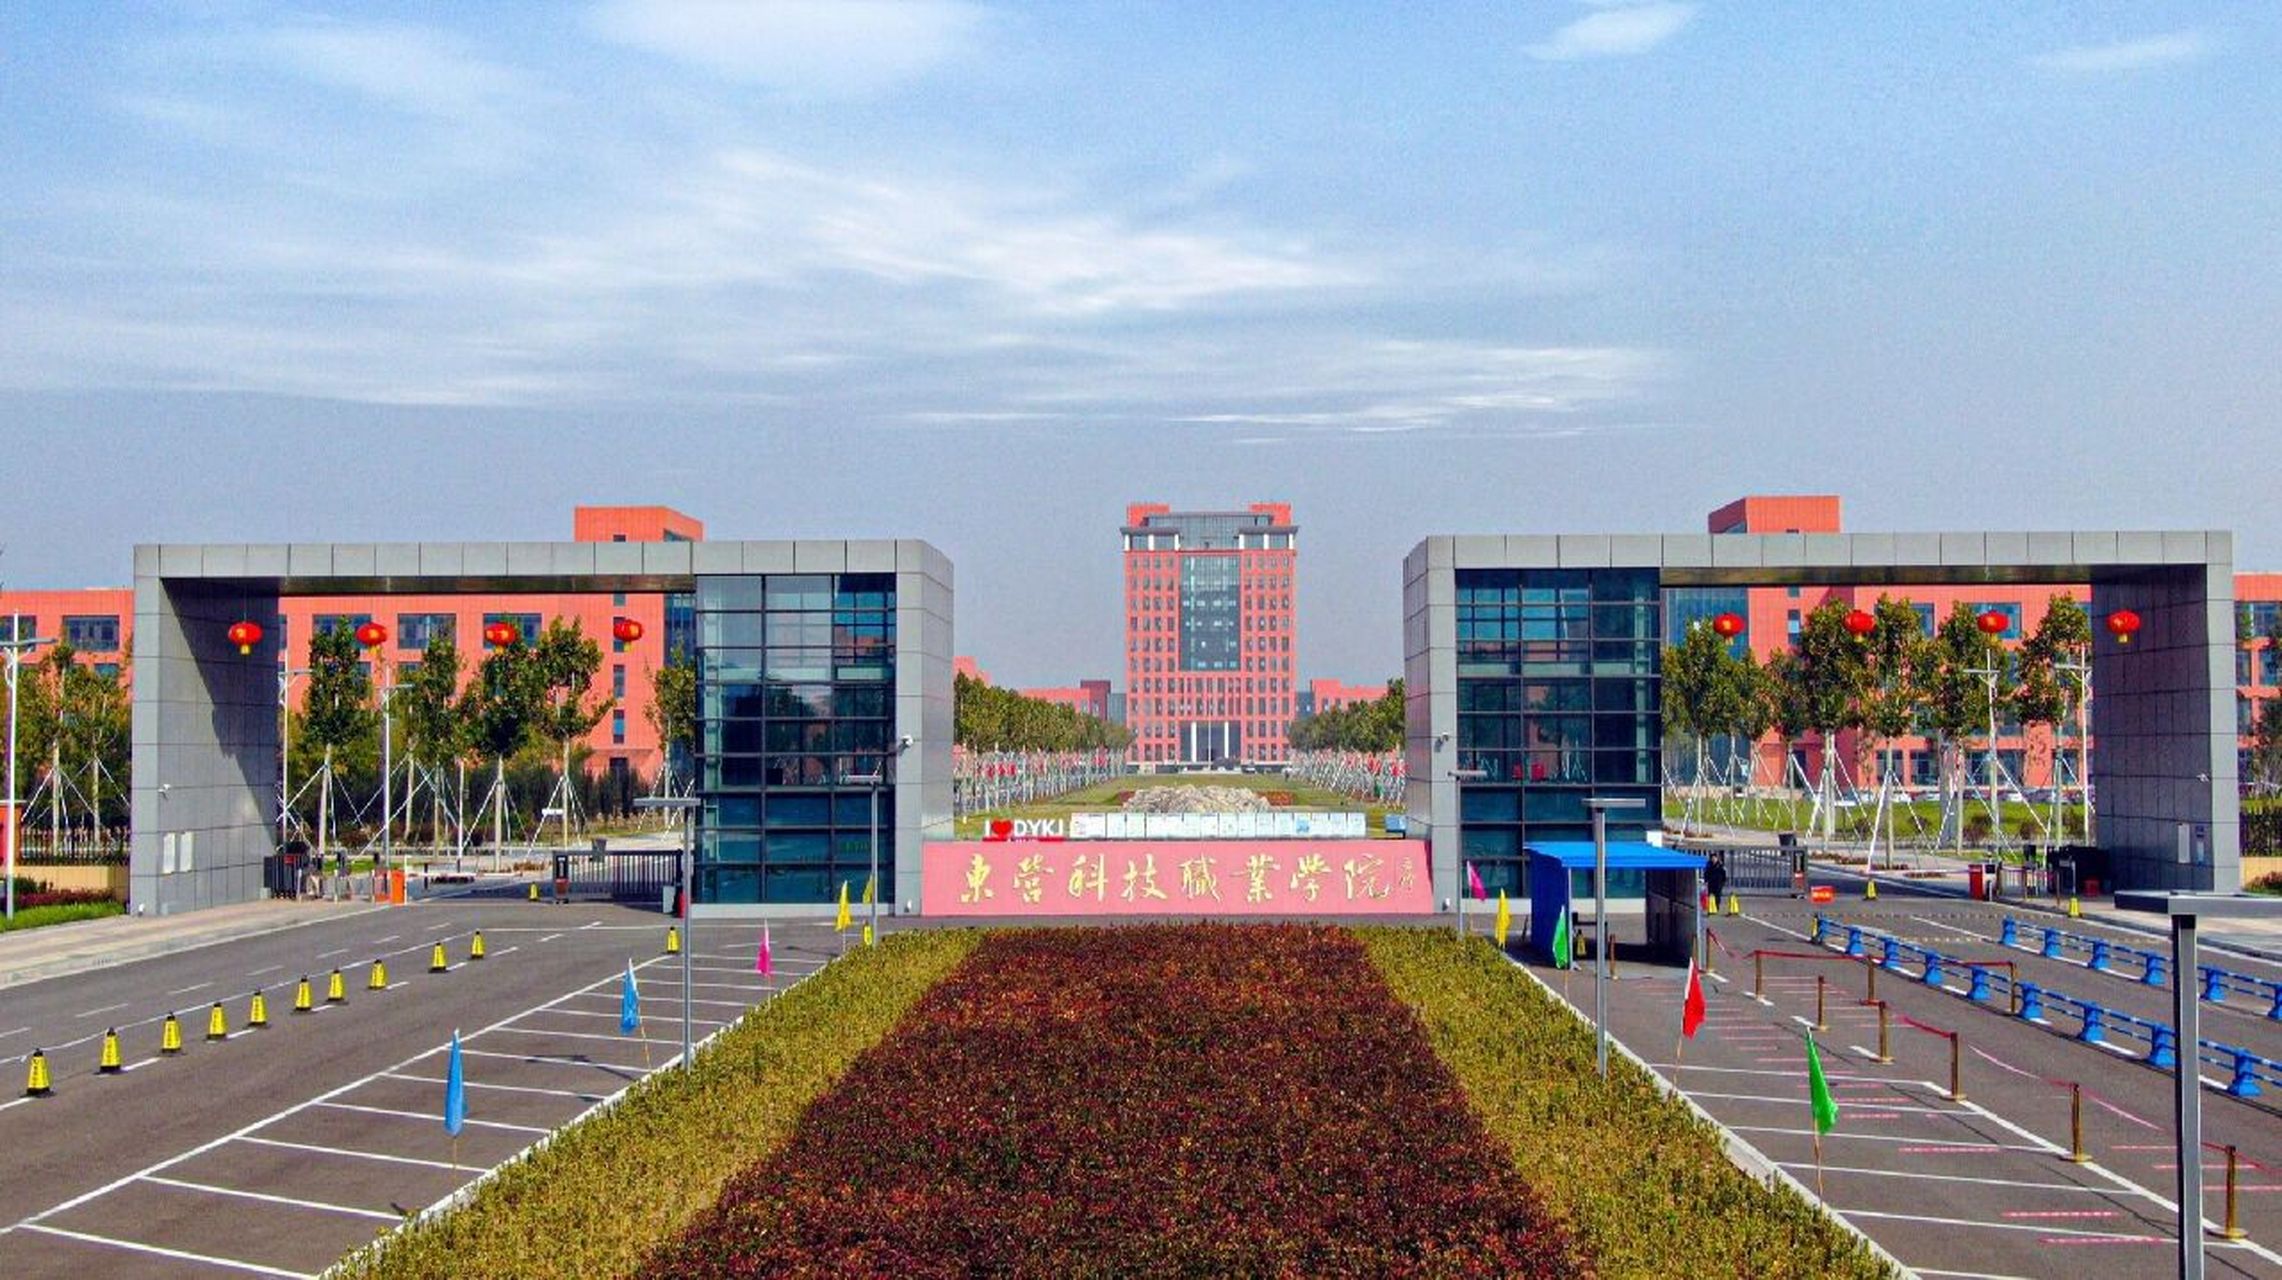 东营科技职业学院 67东营科技职业学院创建于1985年,是经山东省政府